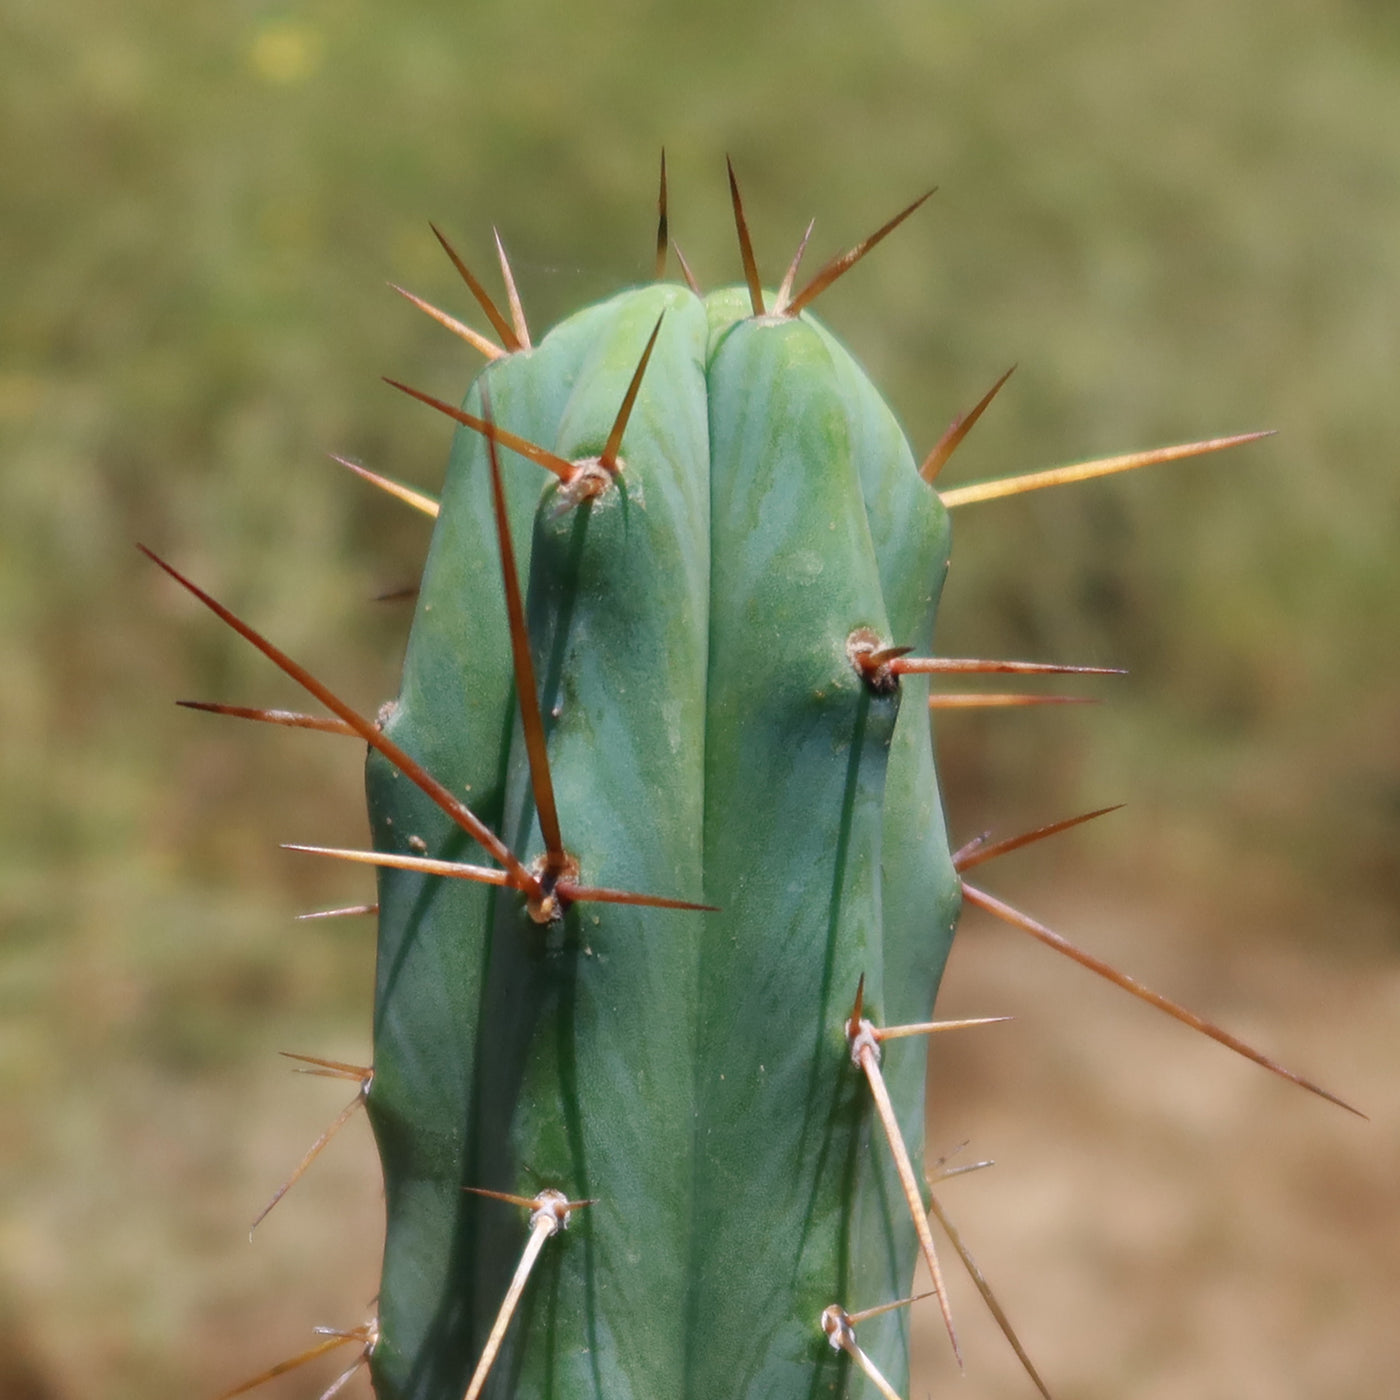 Bolivian Torch Cactus 'Trichocereus bridgesii'